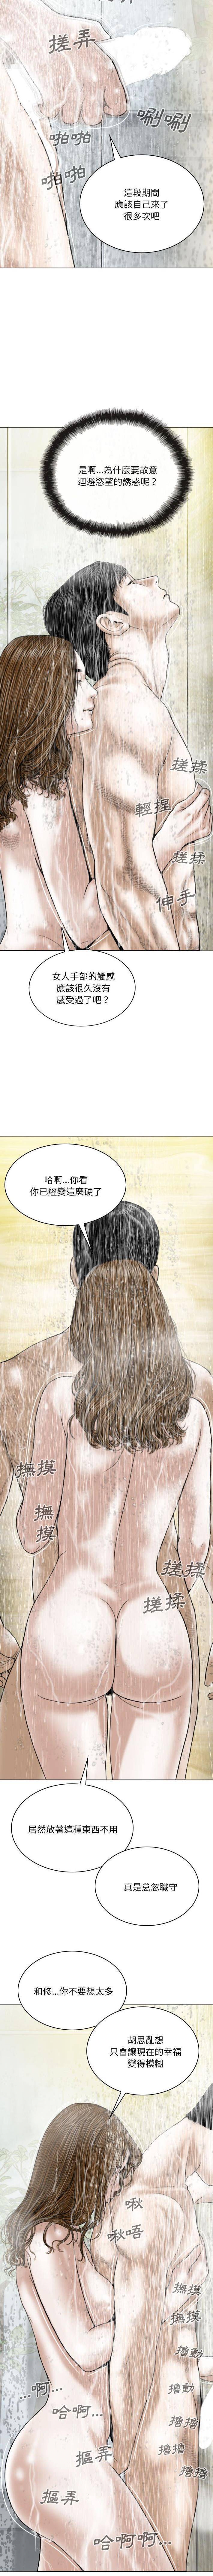 韩国污漫画 隻愛那女人 第11话 13